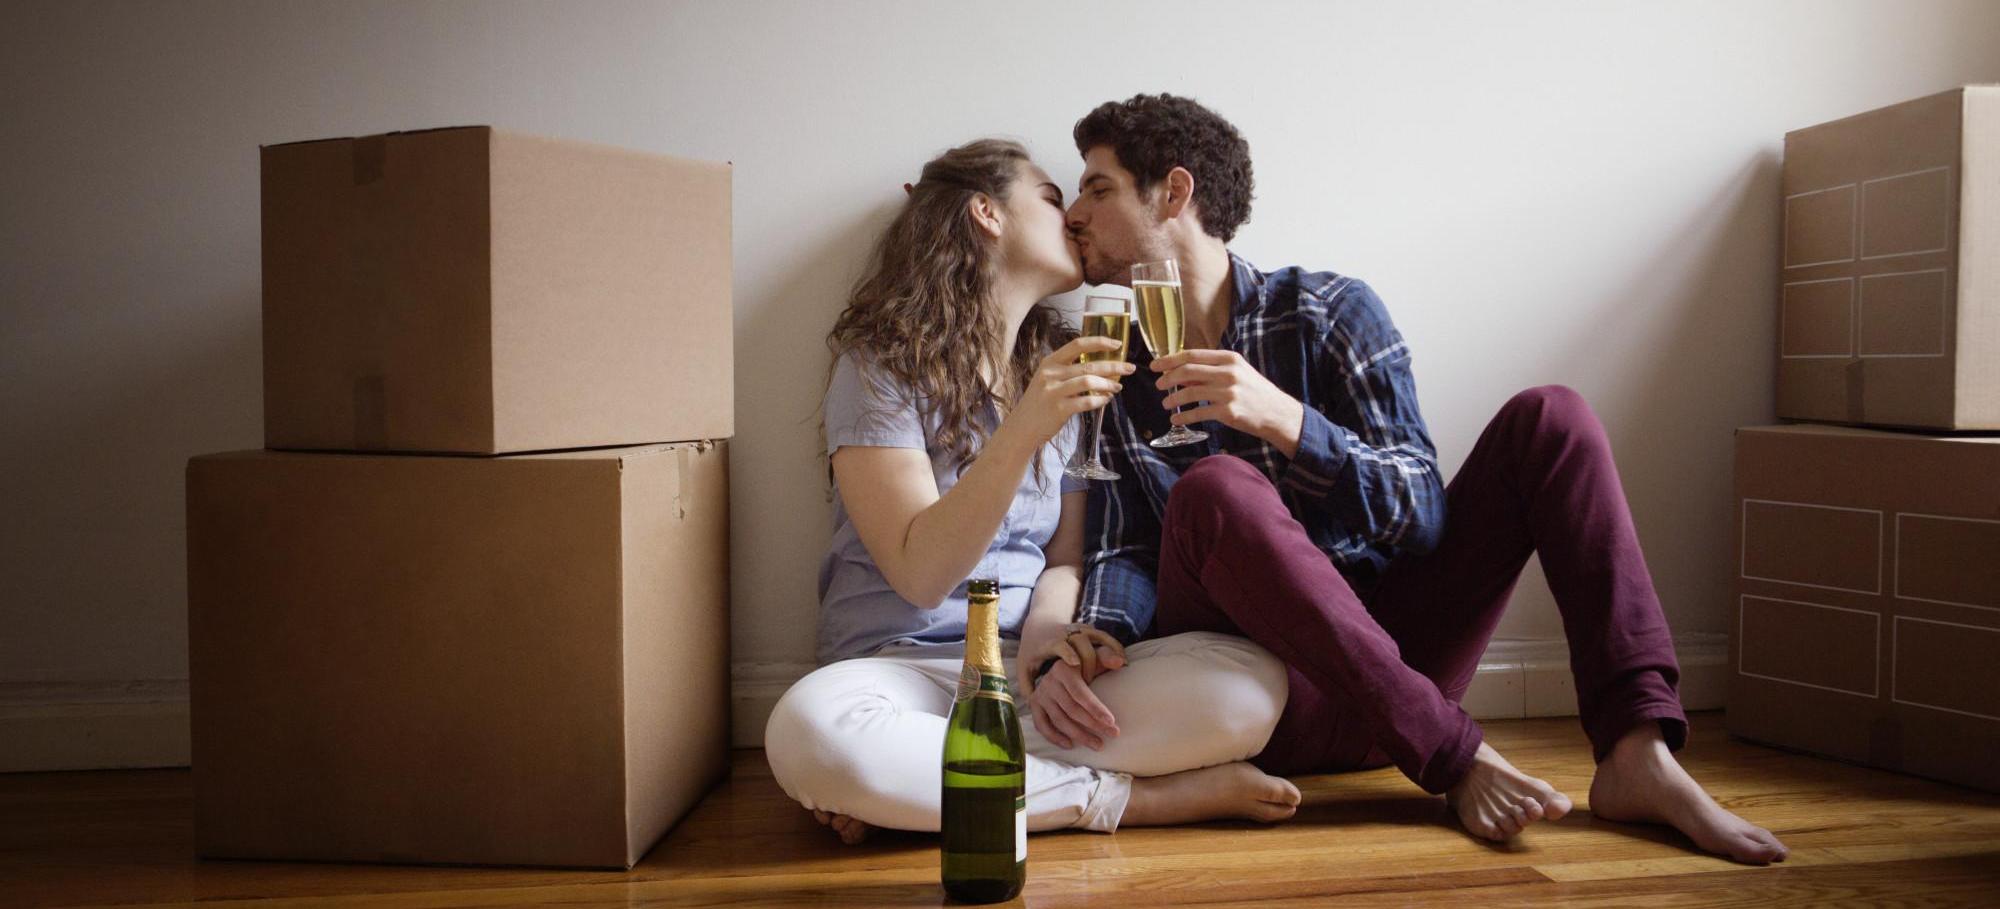 10 cosas que debes saber antes de vivir en pareja